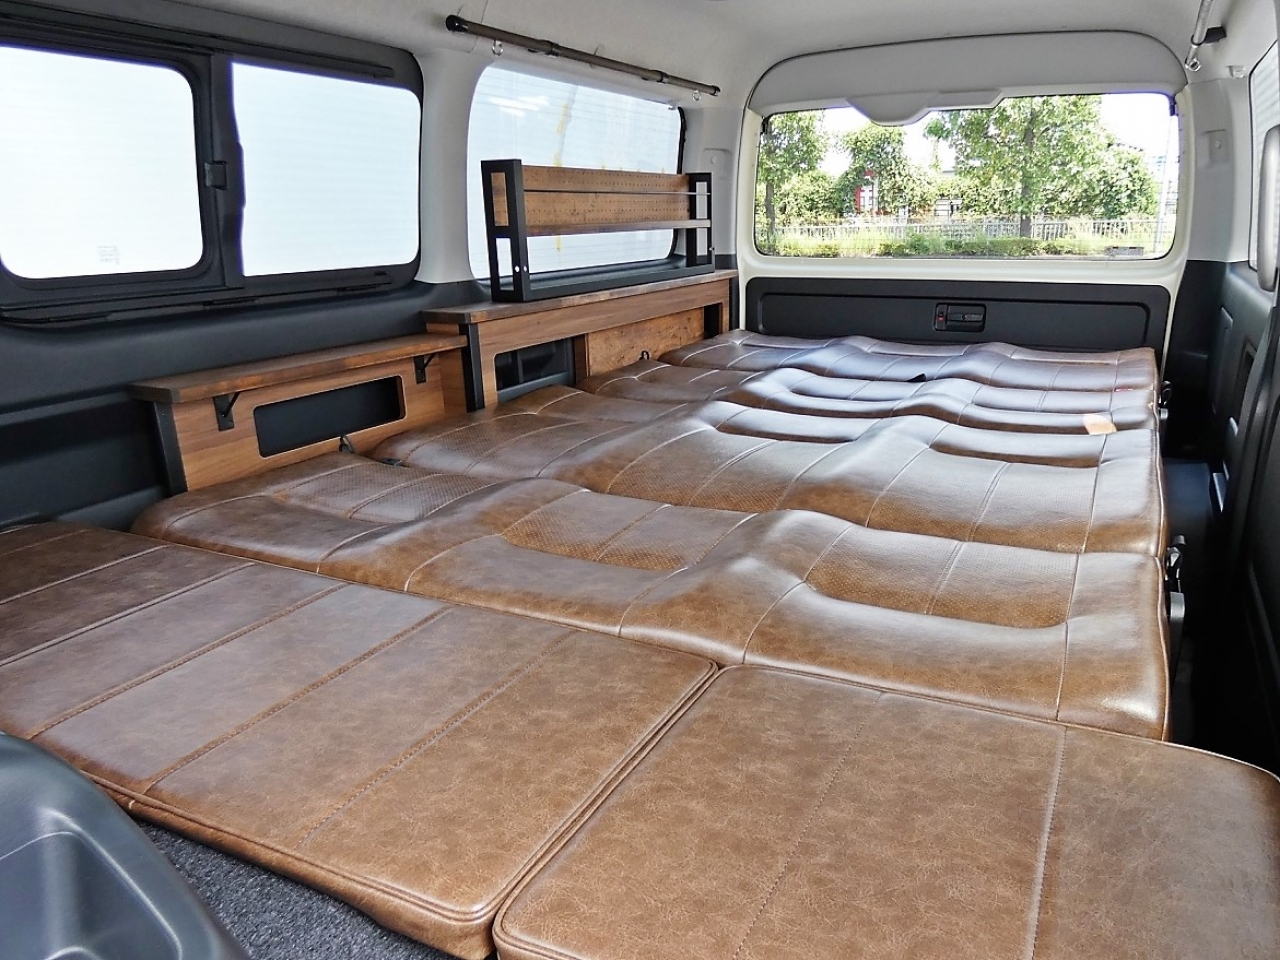 ハイエースワゴン 3列シート×バンライフスタイル【FD-BOX W04】 これだけ広い空間ならご家族で車中泊も可能じゃないでしょうか